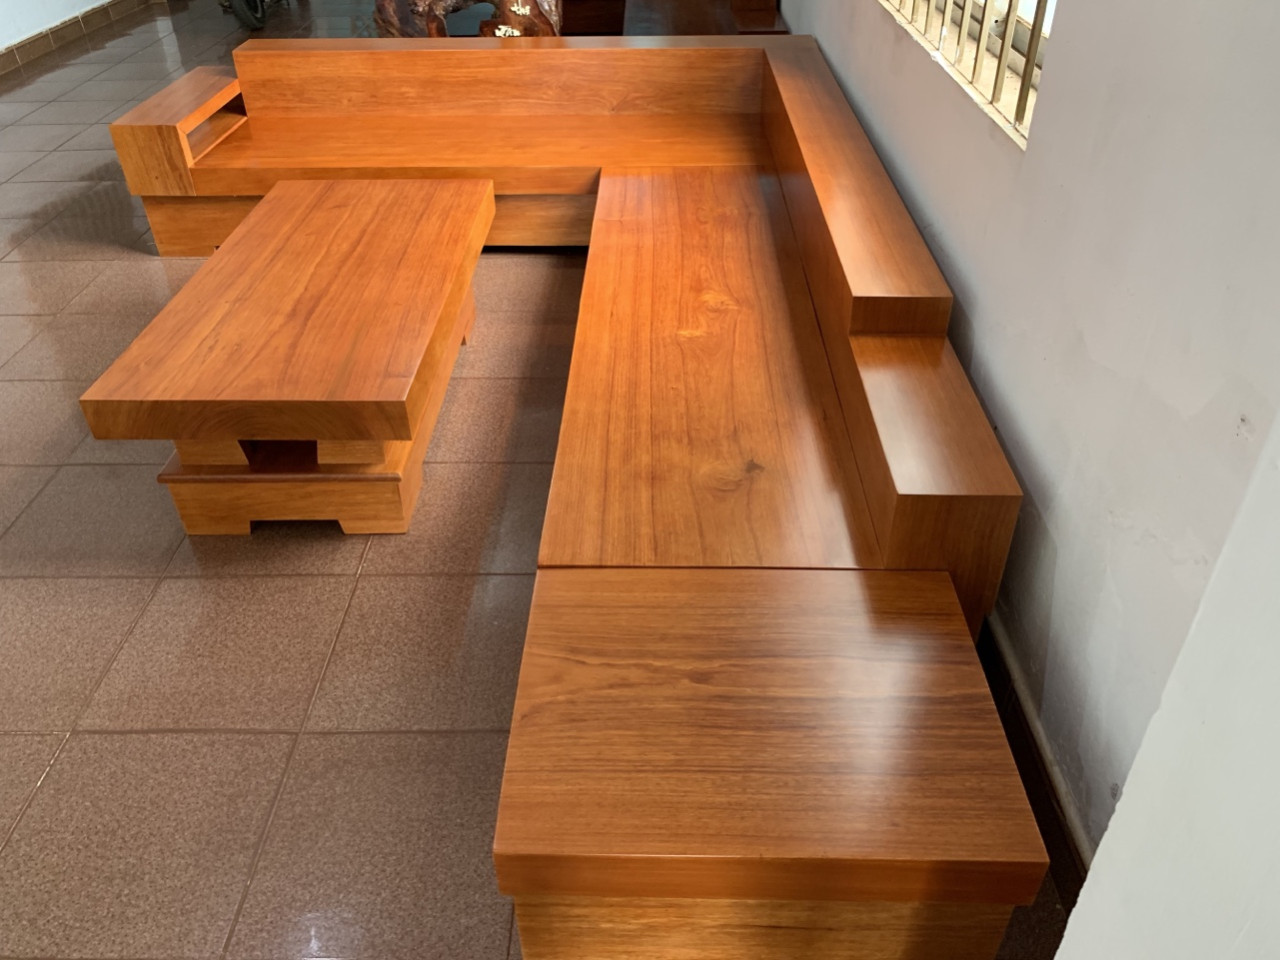 Sofa gỗ nguyên khối với thiết kế hiện đại